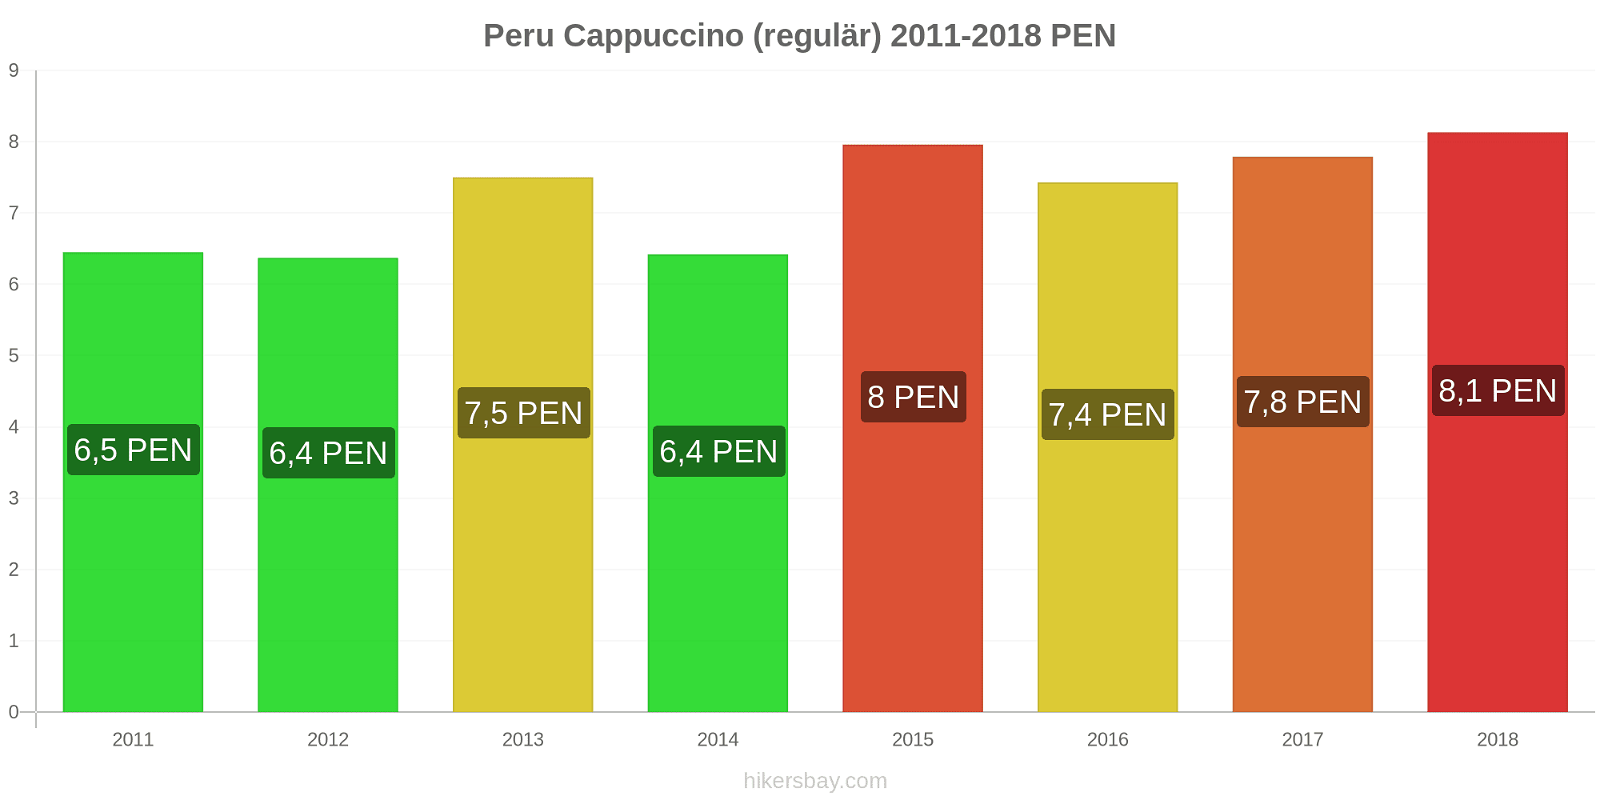 Peru Preisänderungen Cappuccino (regulär) hikersbay.com